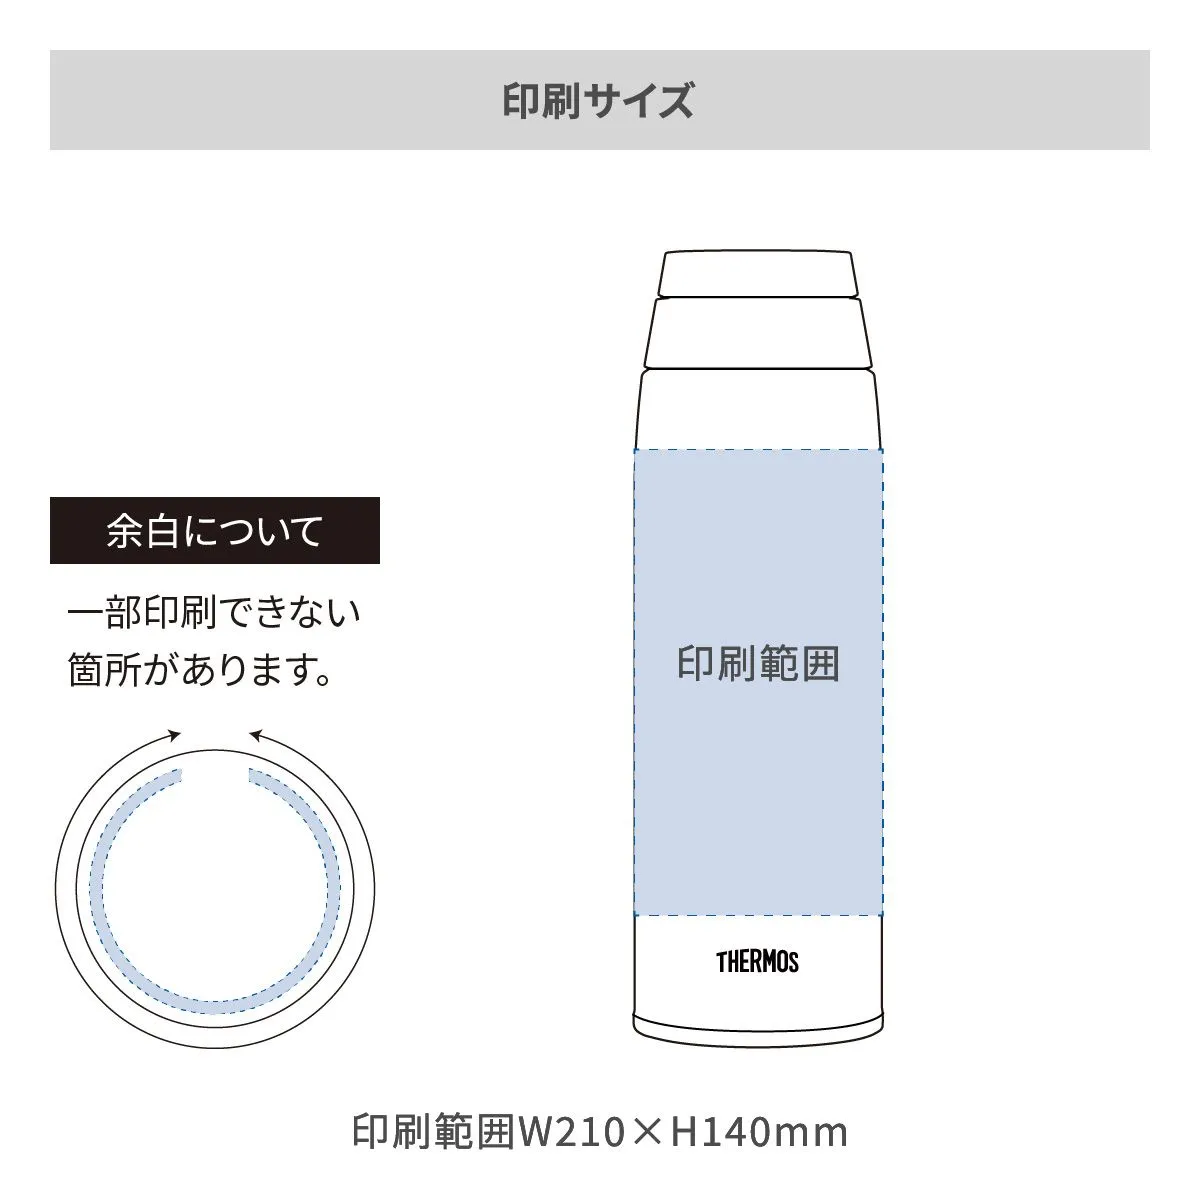 サーモス 真空断熱ケータイマグ 750ml【オリジナルステンレスボトル / 回転シルク印刷】 画像2